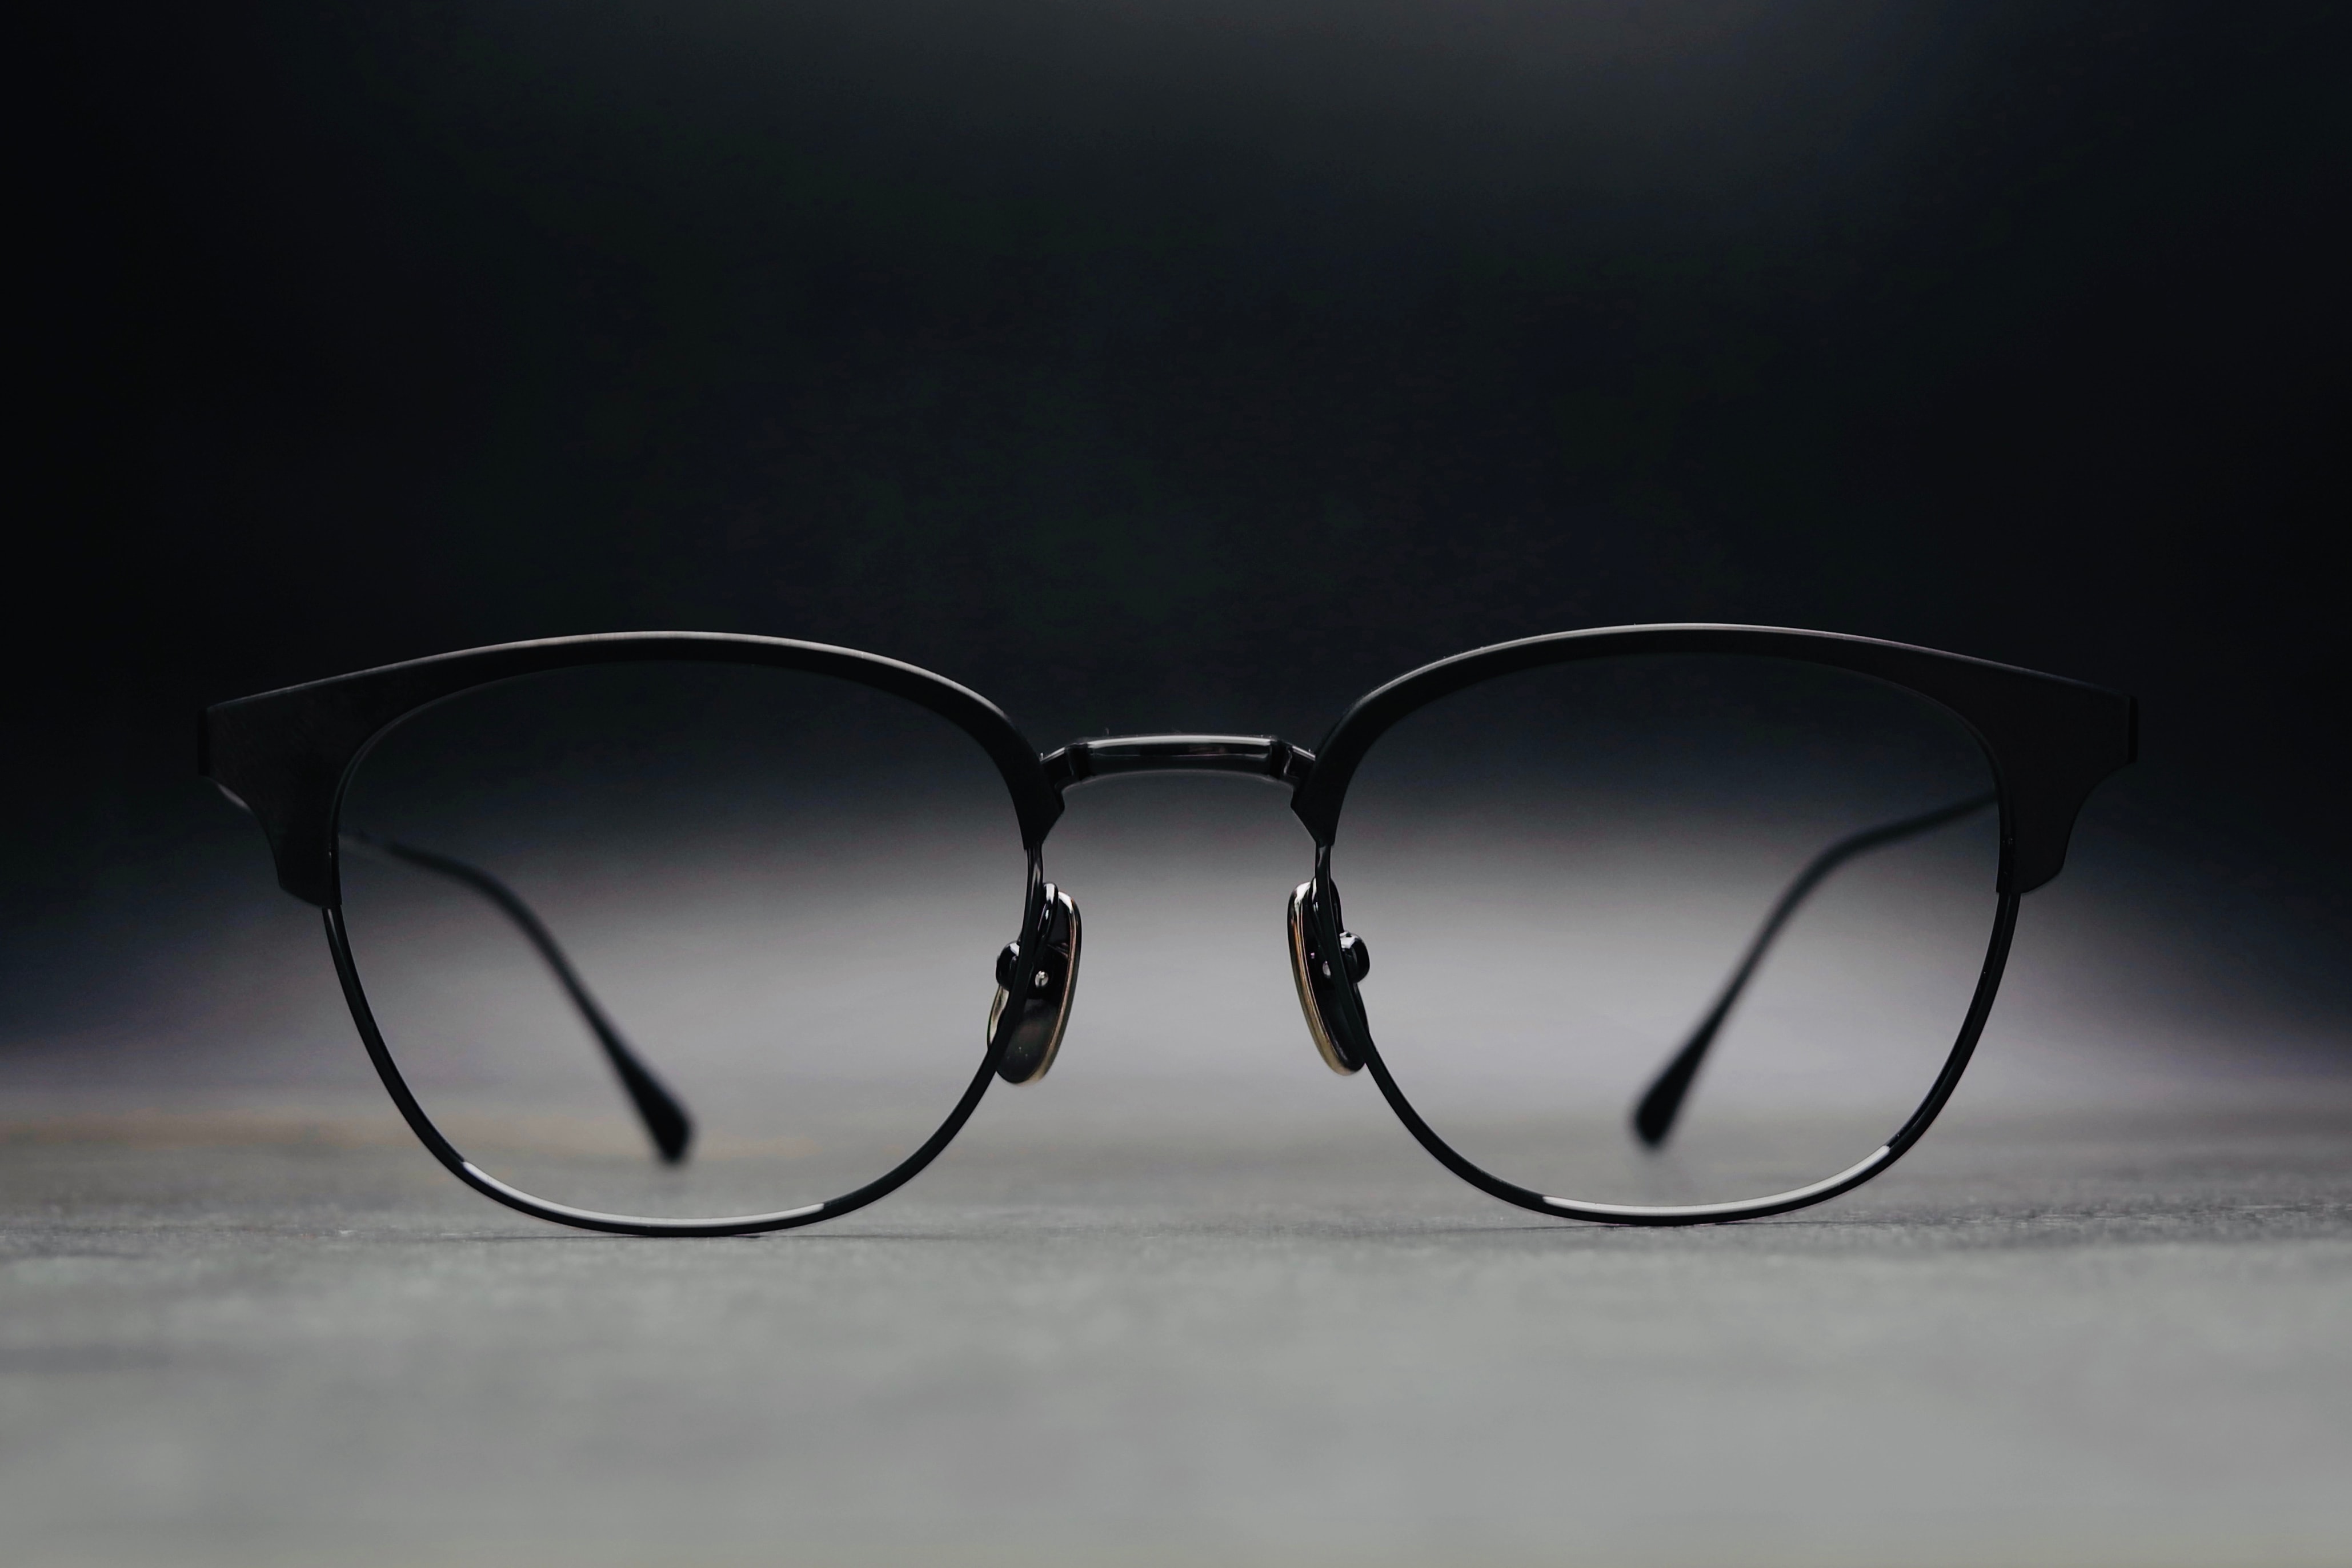 日本眼鏡品牌 JAPONISM 迎來 Sense 全金屬製品